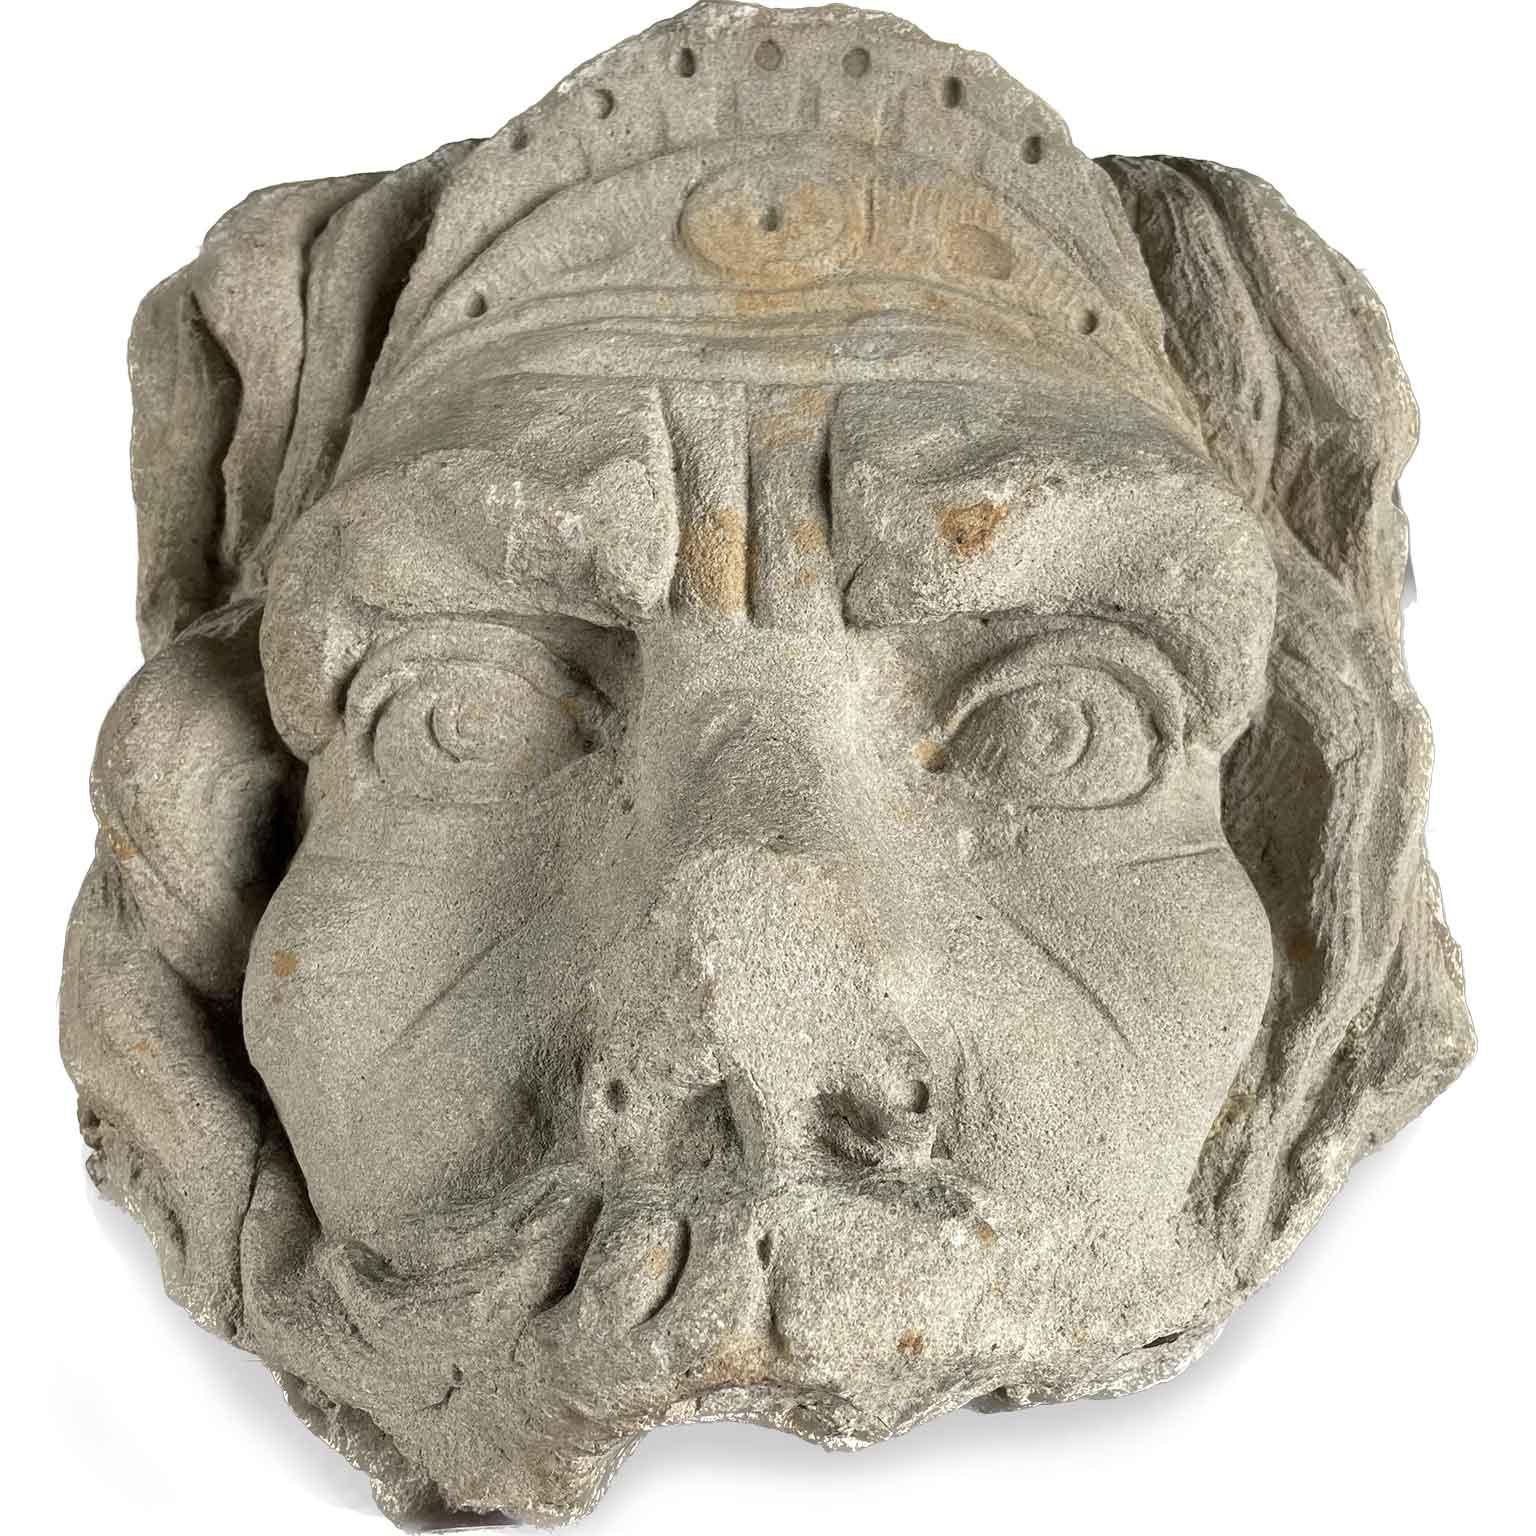 Diese antike Steinmaske wurde wahrscheinlich in einem Springbrunnen verwendet. Es handelt sich um ein sehr dekoratives antikes italienisches Objekt. Die Maske passt als dekoratives Objekt auf eine Kommode oder an eine andere Stelle im Wohnraum.